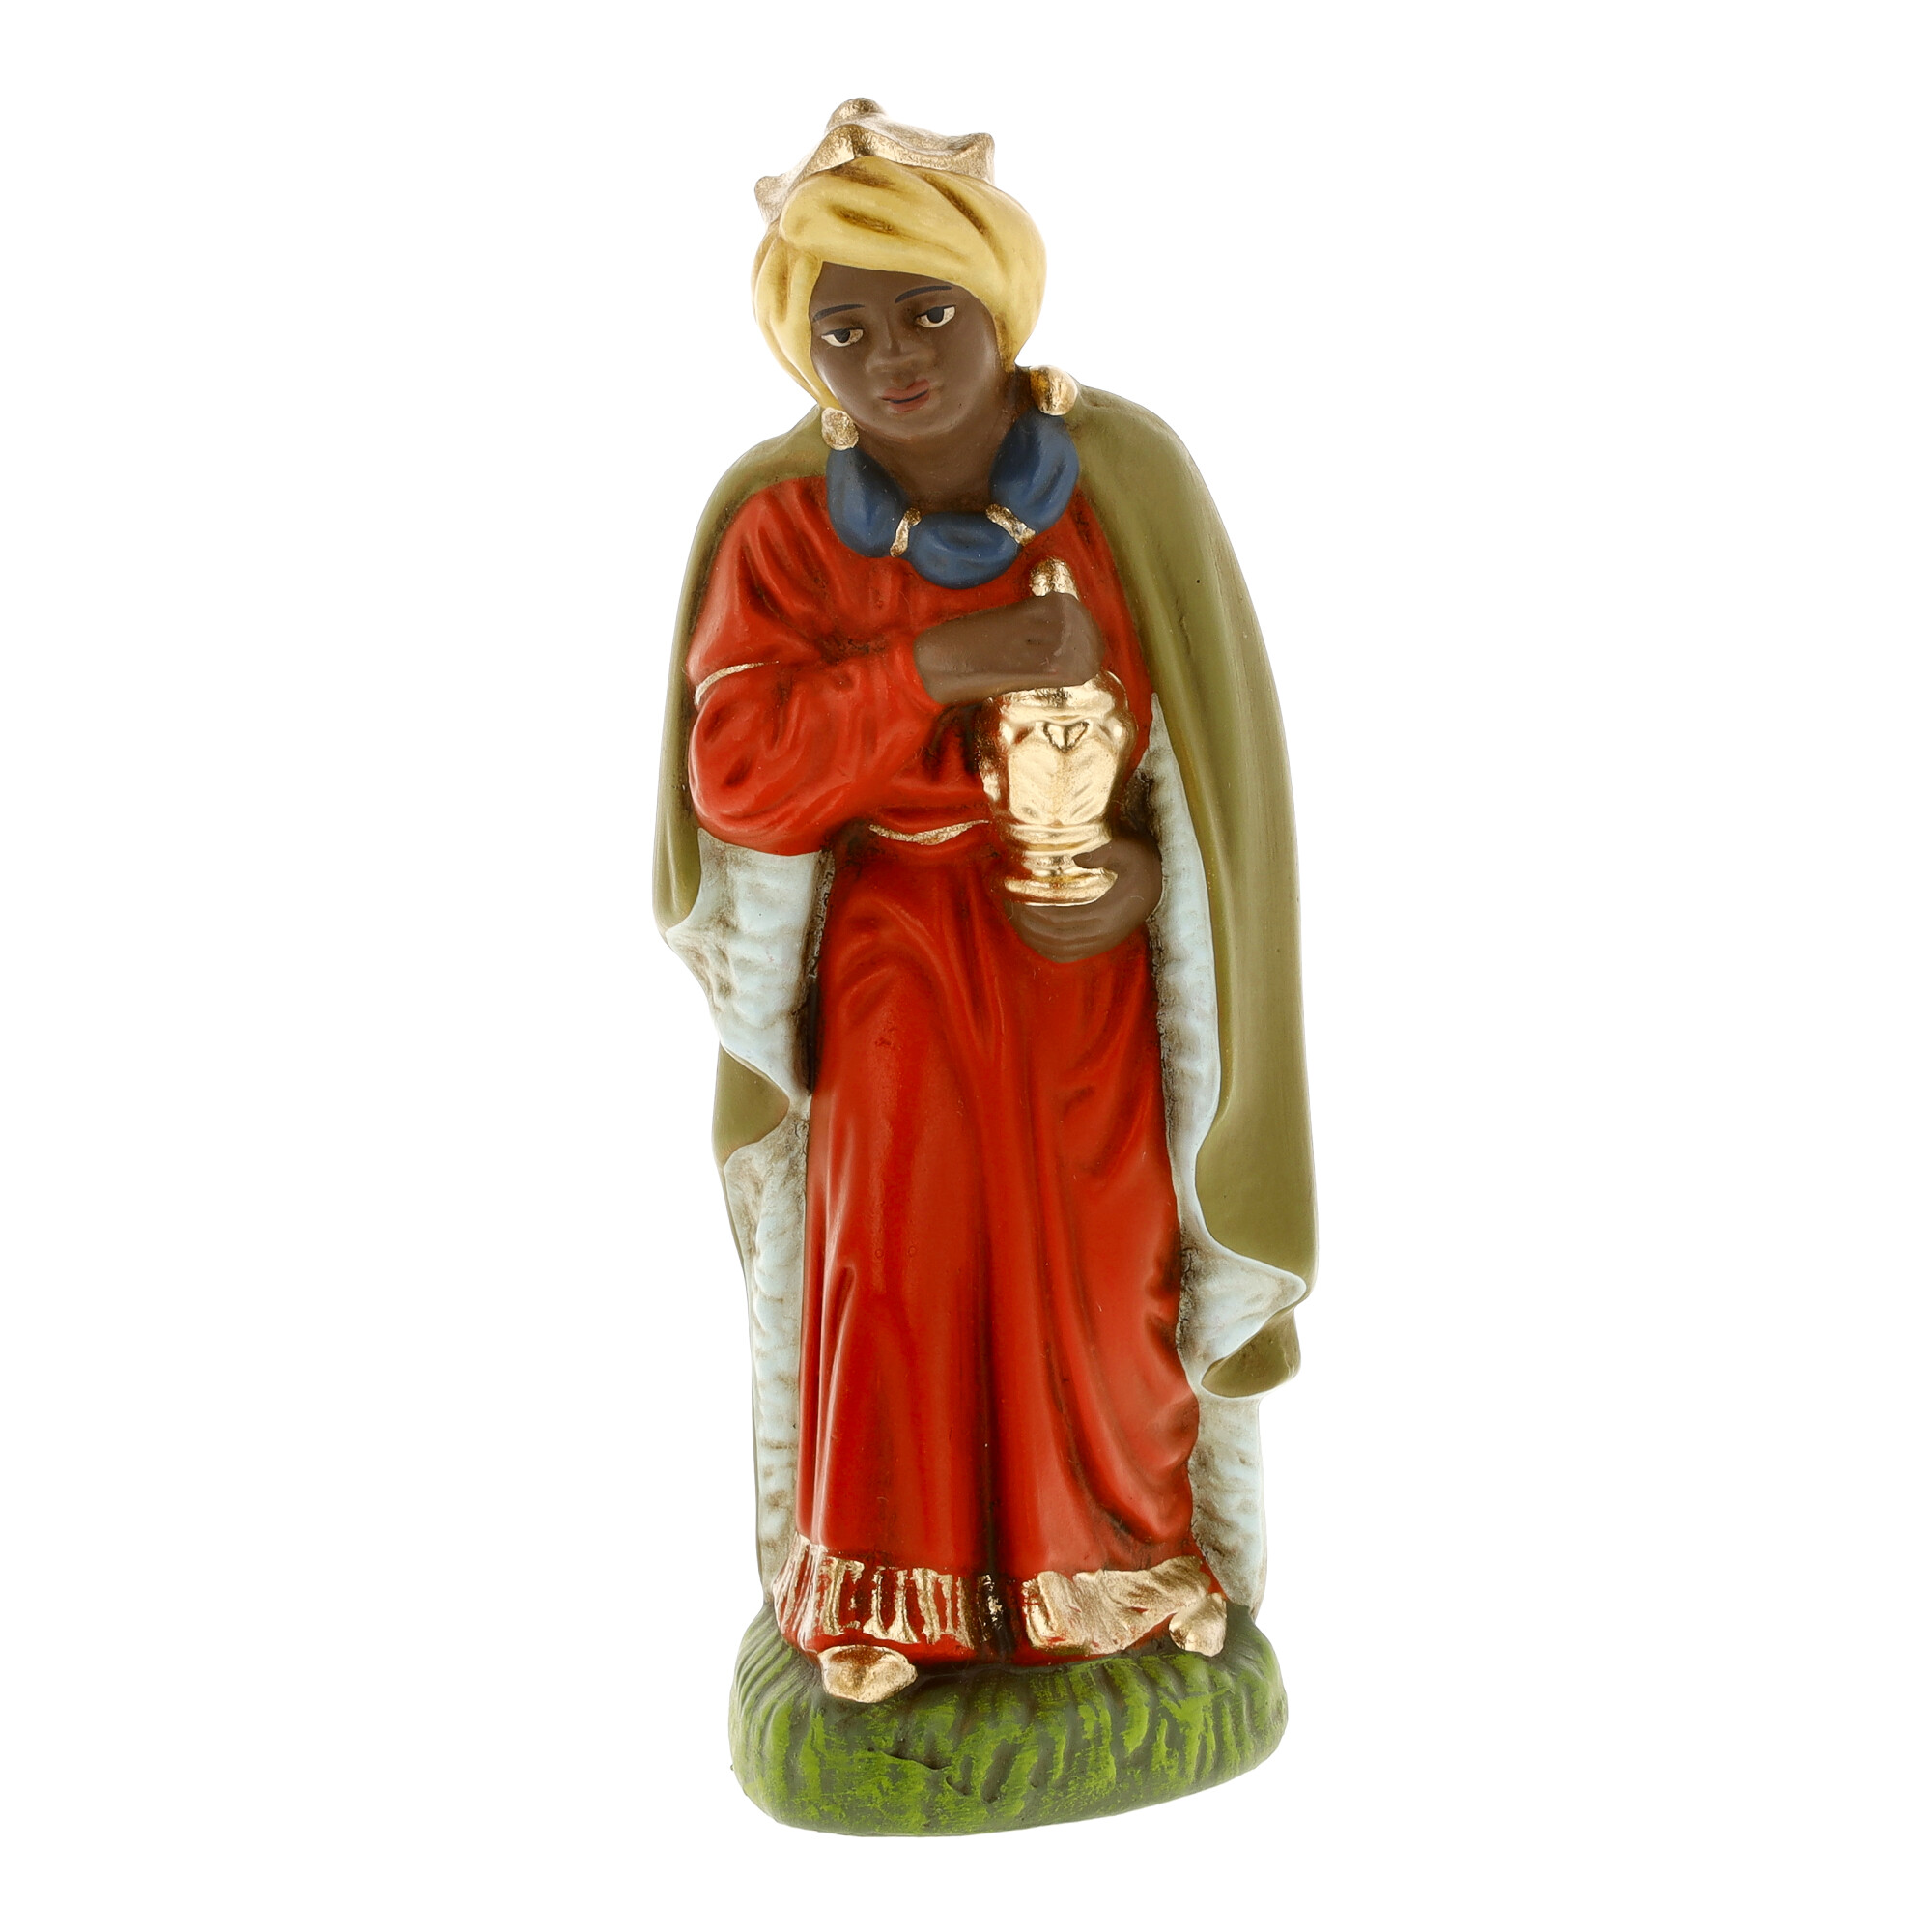 Black King (Caspar) - MAROLIN Nativity figure